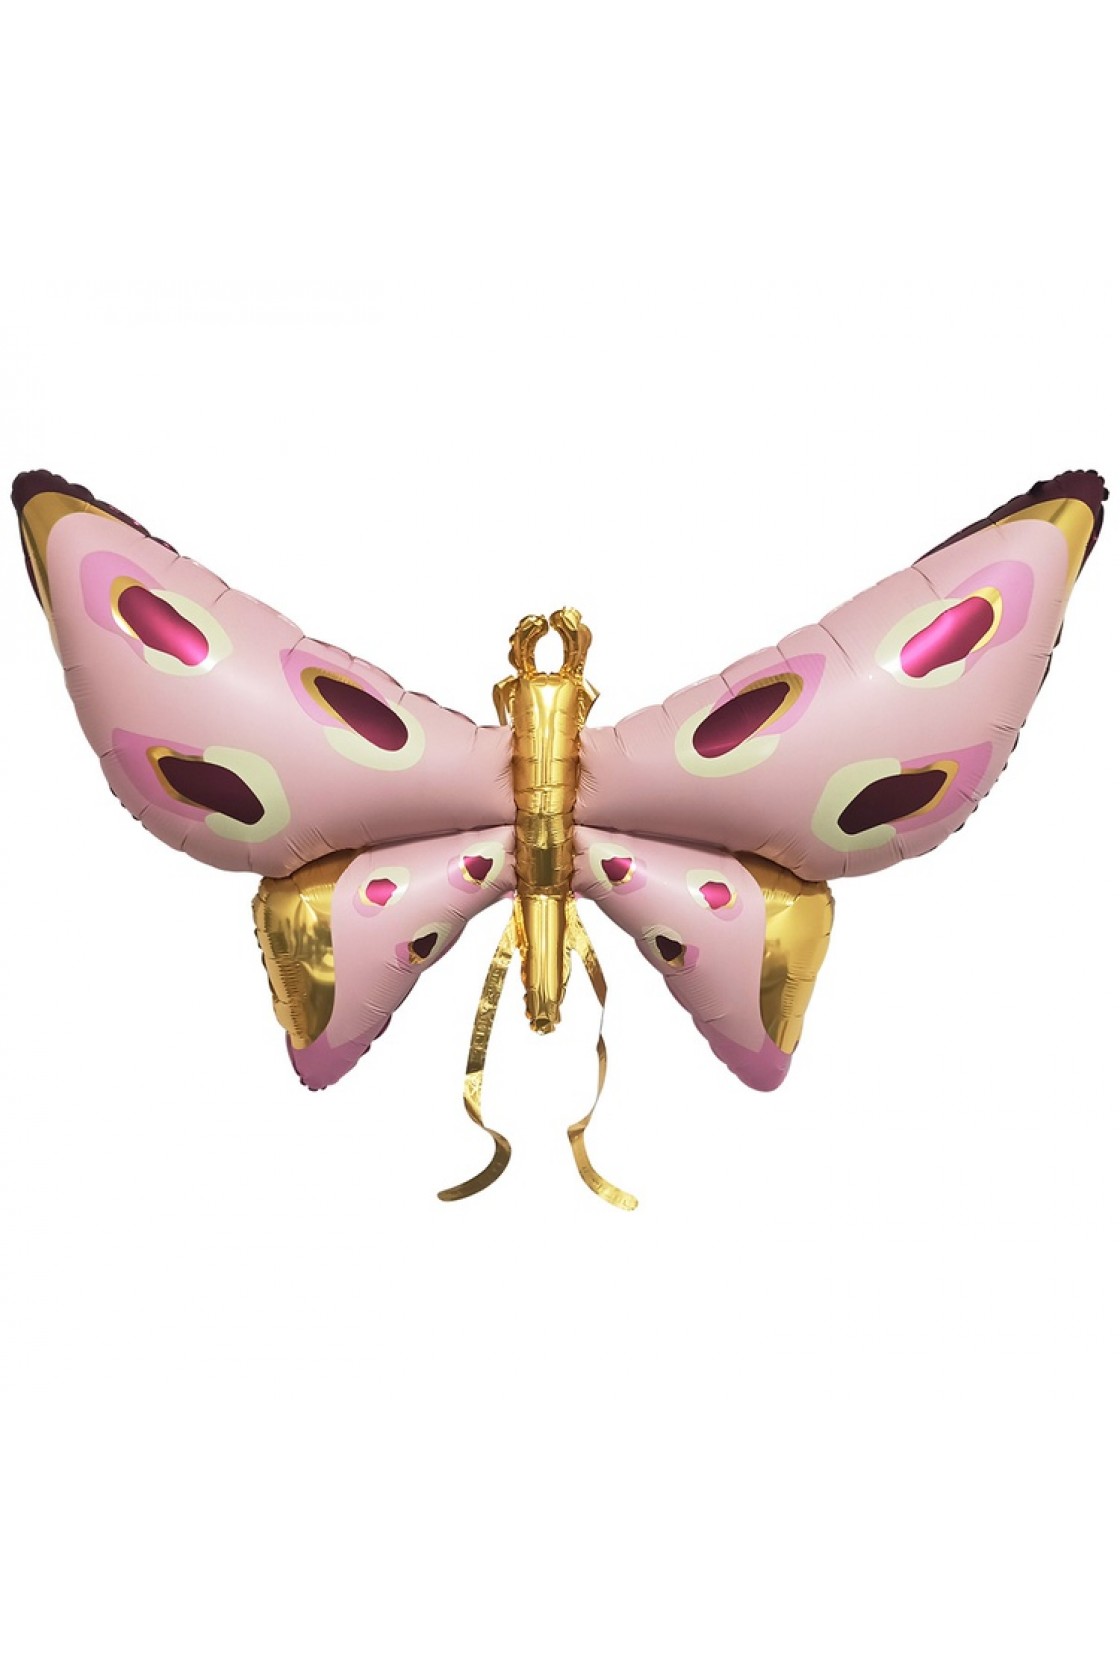 Купить FM Фигура Бабочка розовая  с усиками в Новосибирске с доставкой